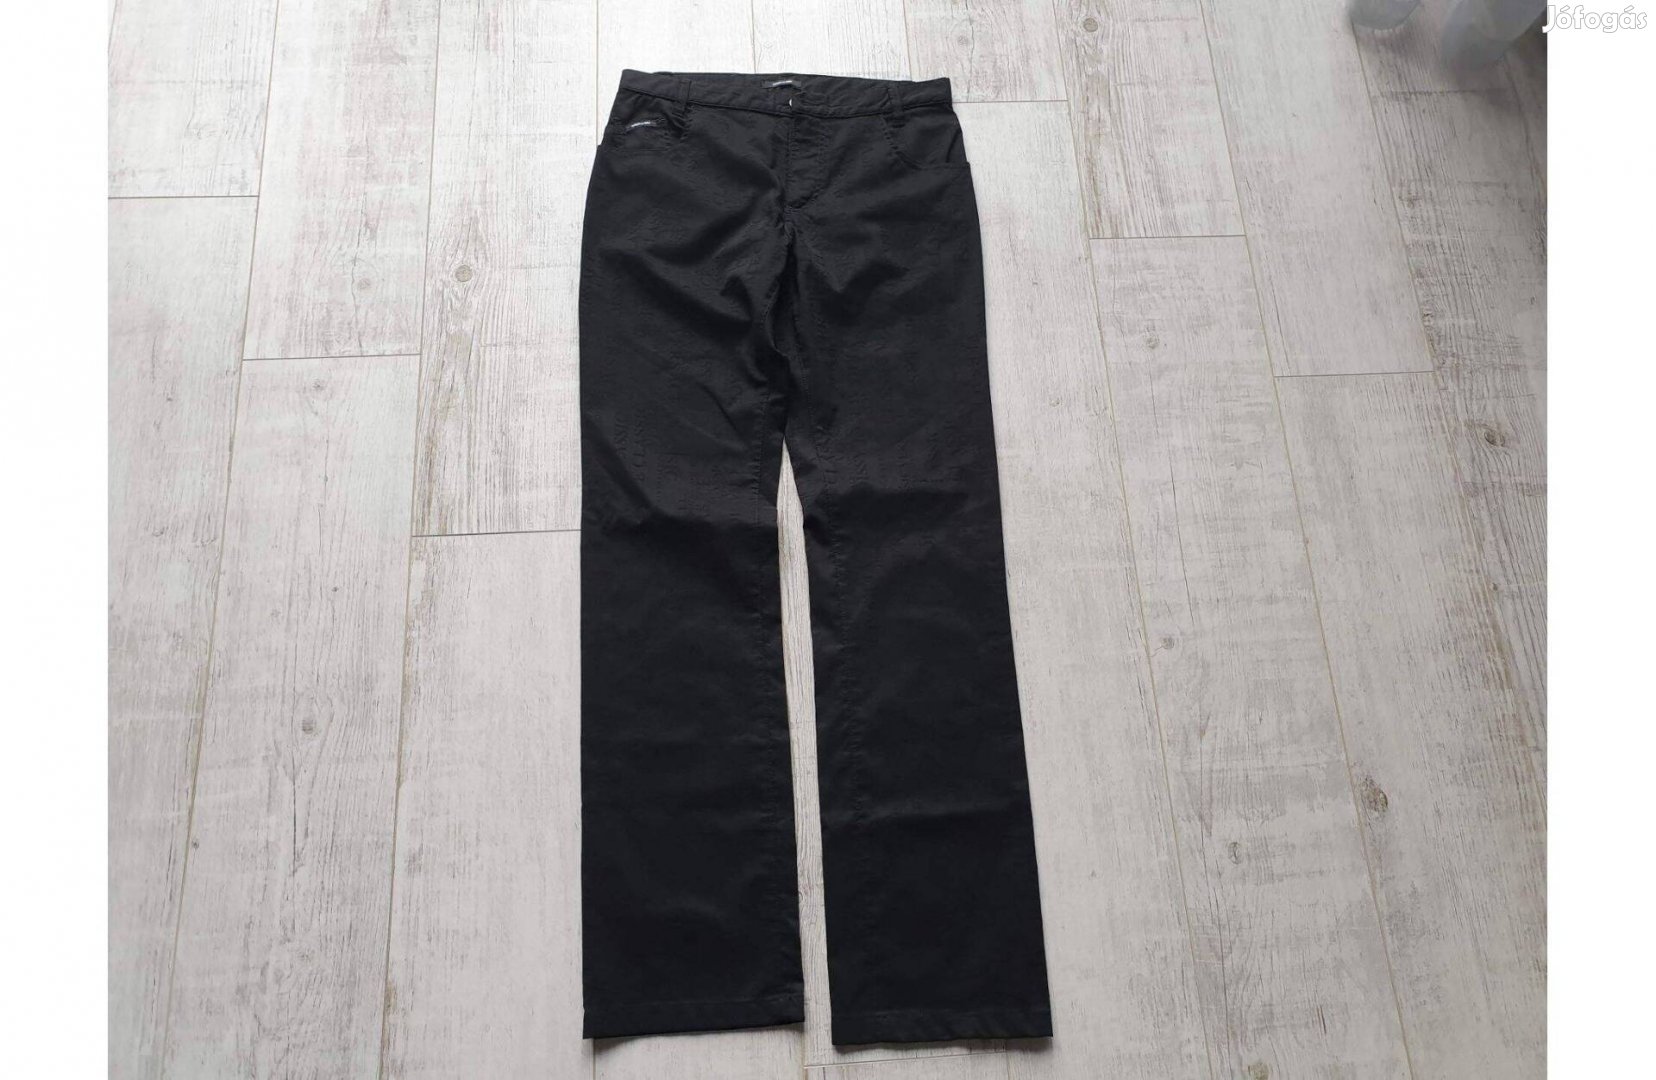 Új Versace Classic fekete nadrág, méret: 33 - postázom is